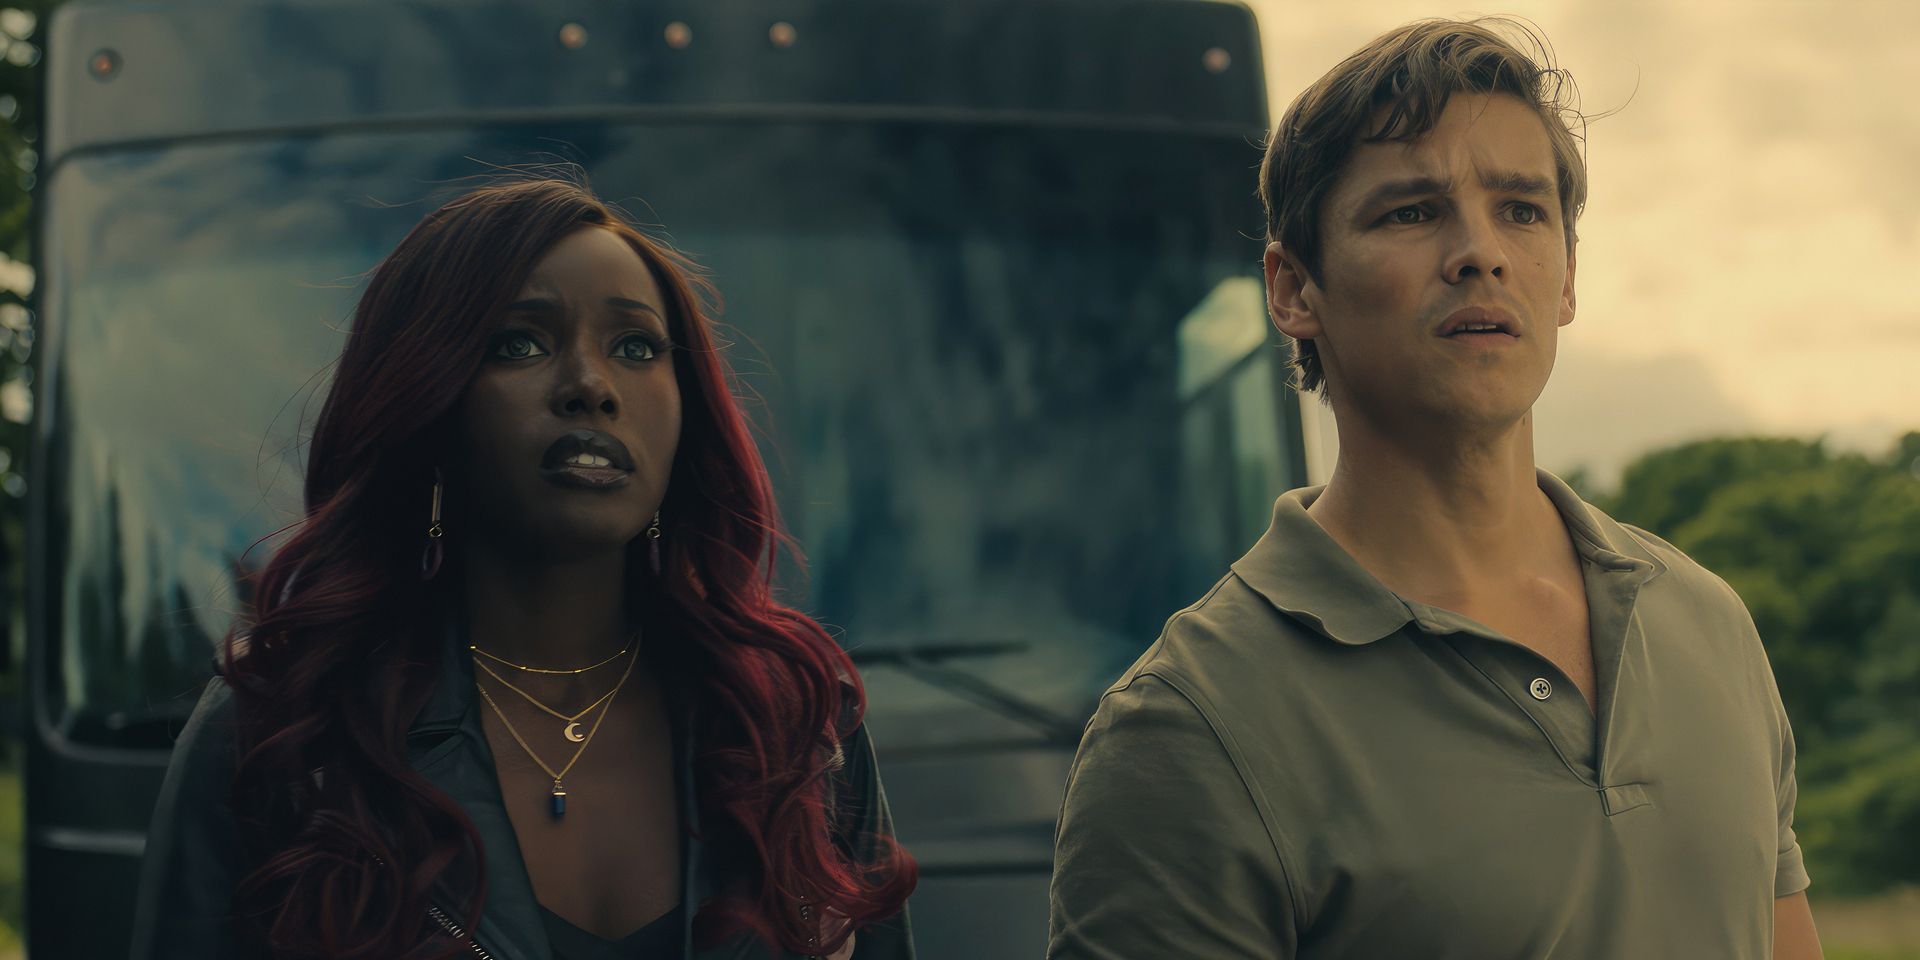 Starfire et Nightwing des Titans, joués par Anna Diop et Brenton Thwaites, regardent nerveusement quelque chose devant un bus